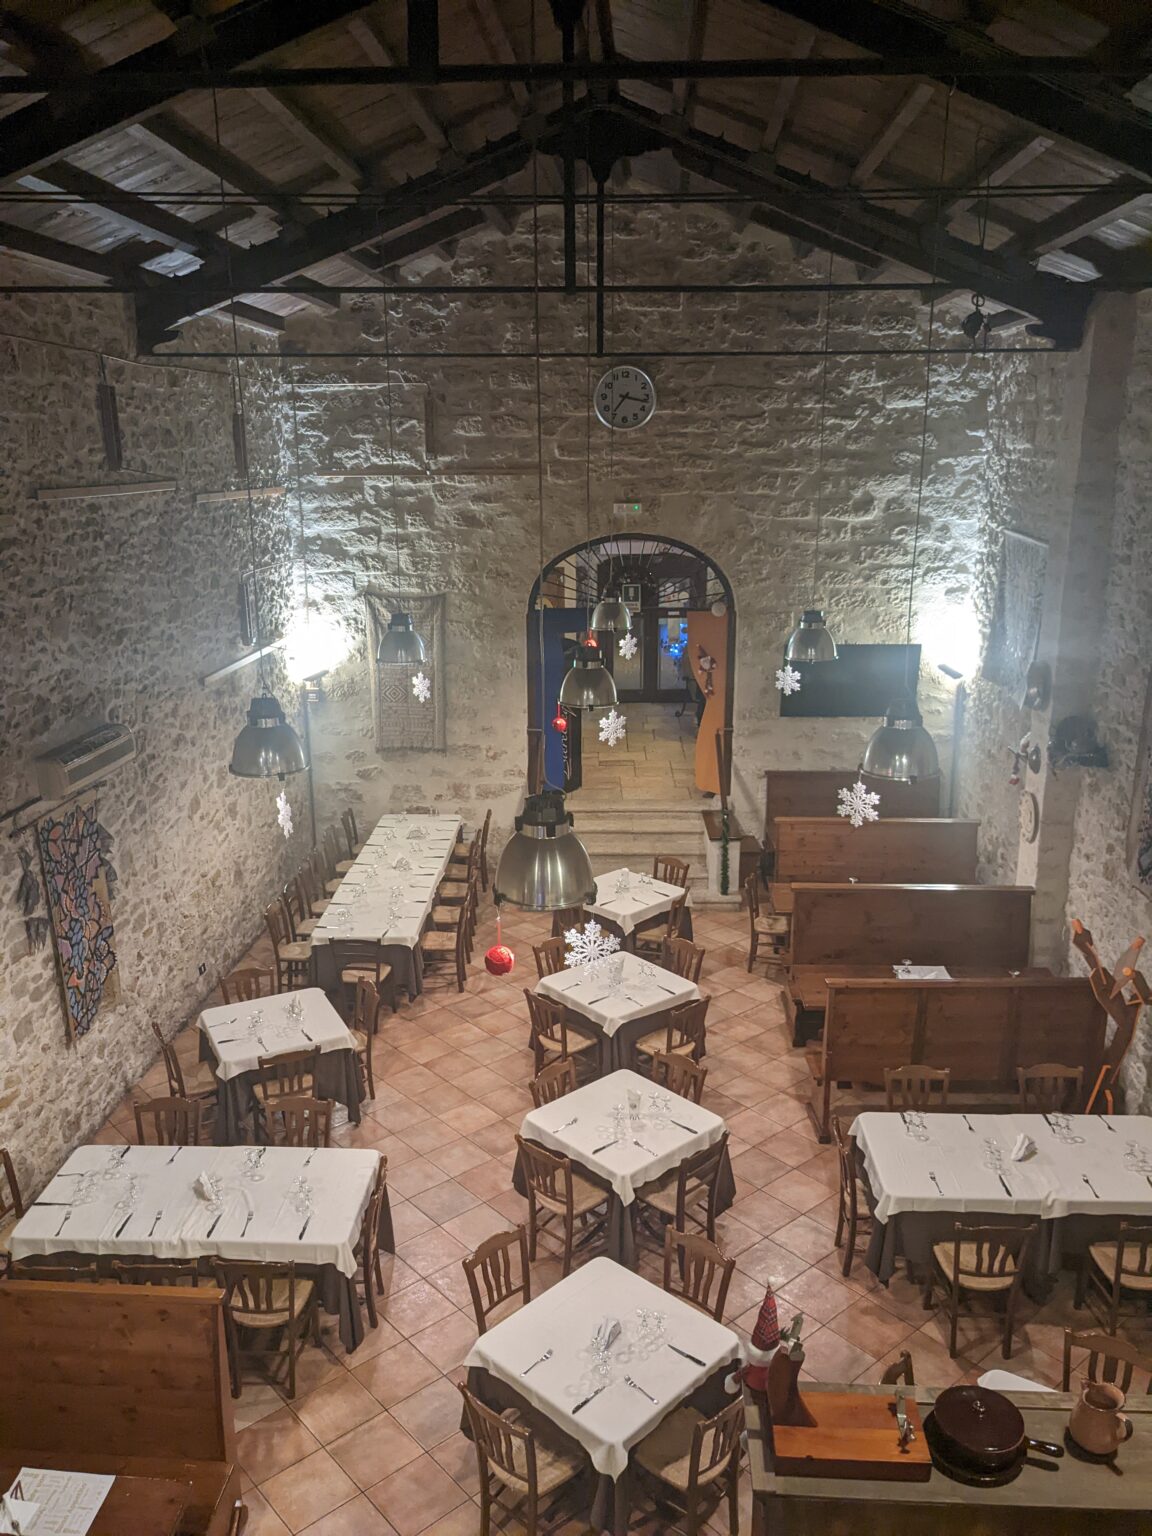 Ristorante La Giara, Migliori ristoranti ad Alcamo, dove mangiare ad Alcamo, articolo relativo ai ristoranti di Alcamo